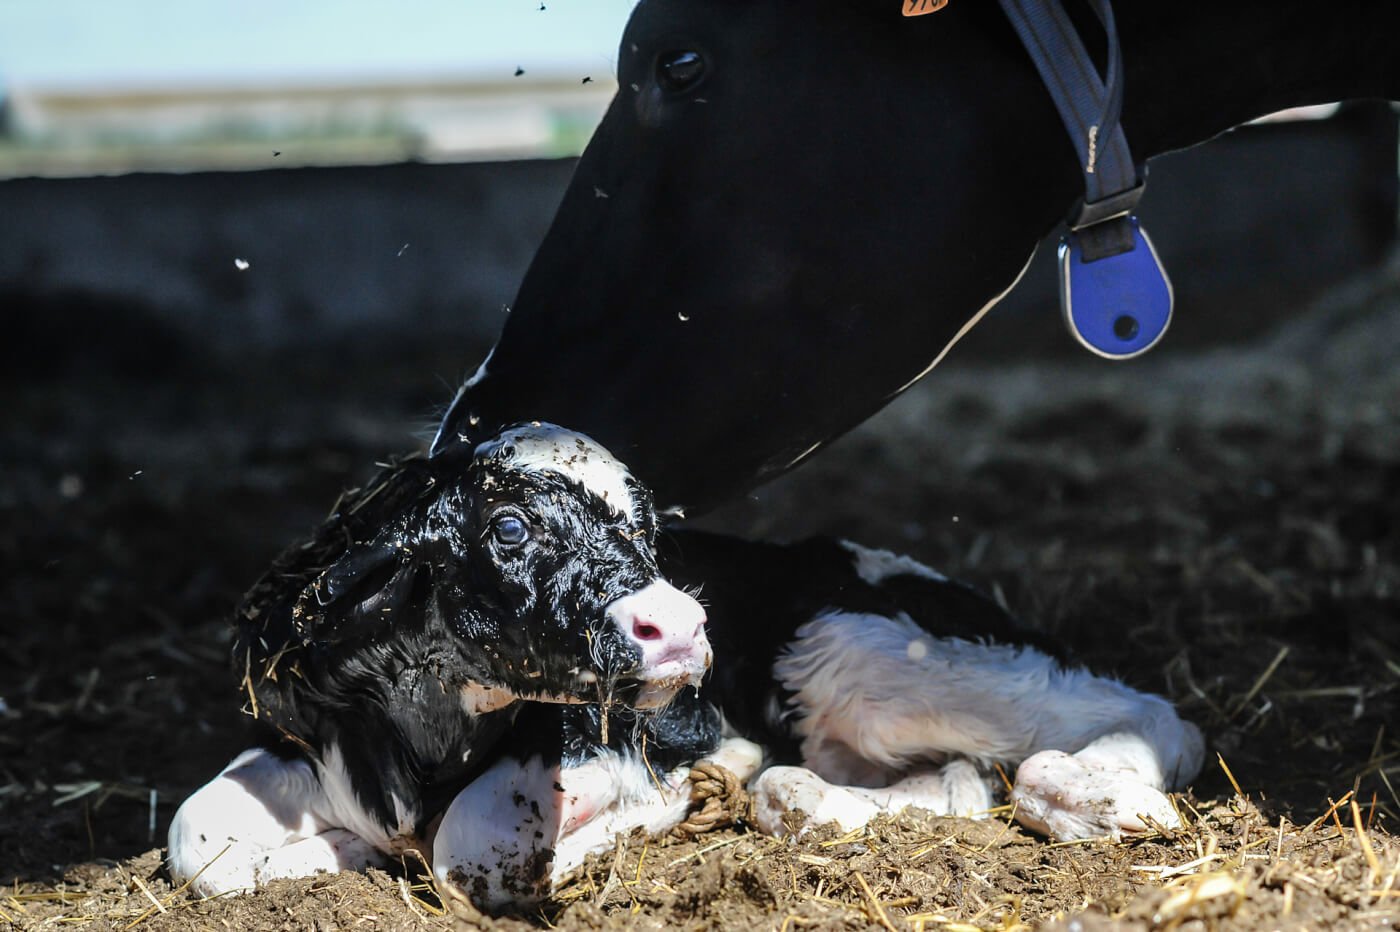 A mother cow licking her newborn calf.